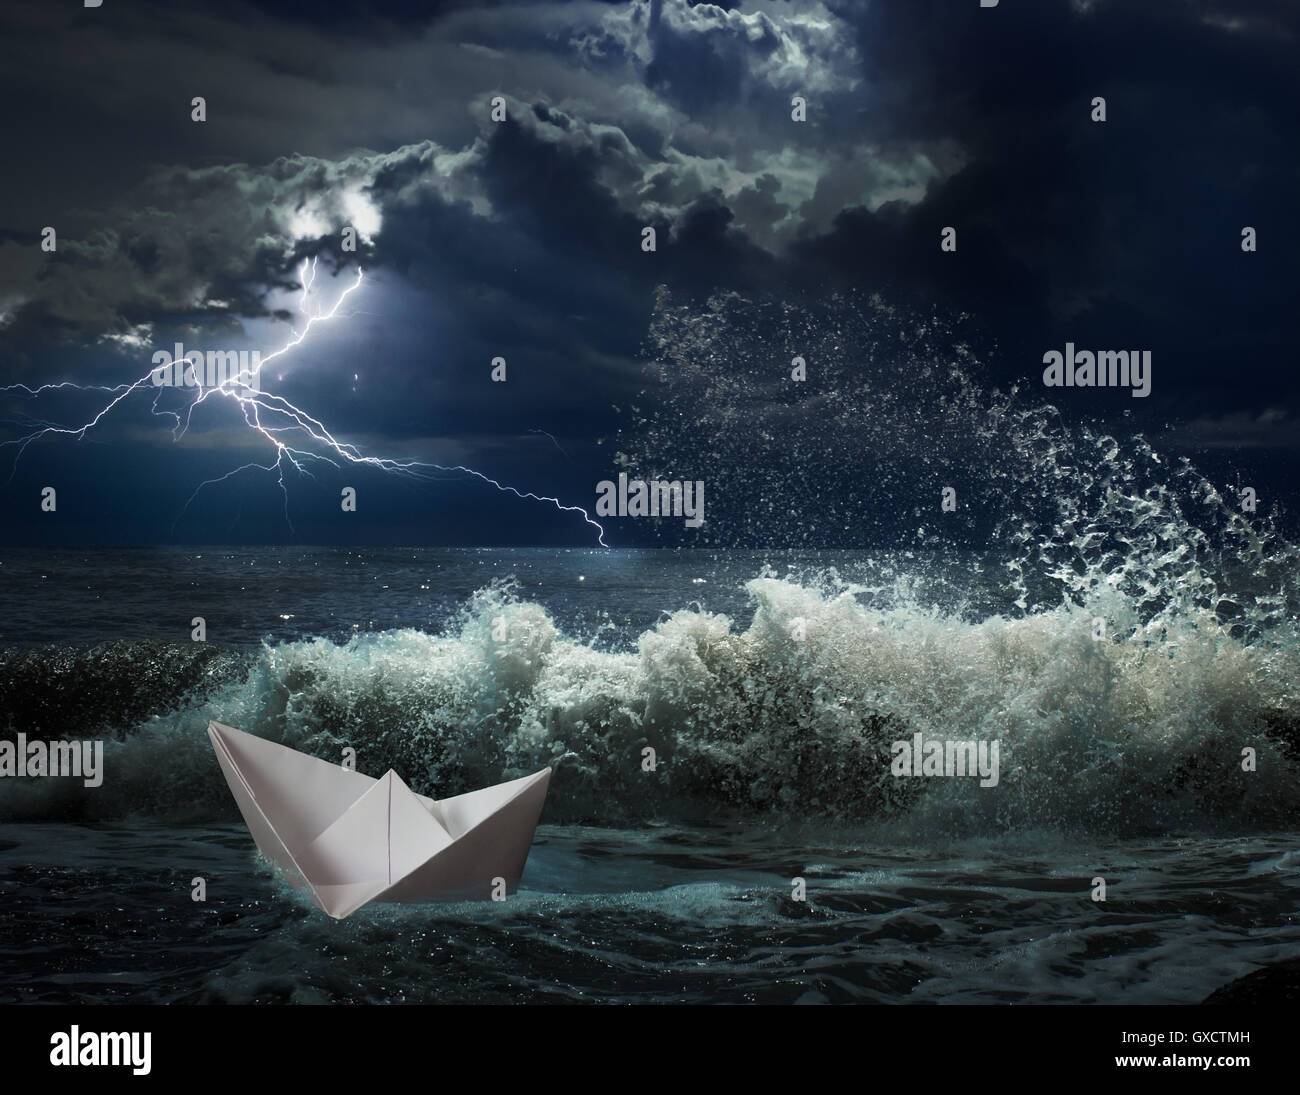 Bateau en papier lgihting avec tempête de l'océan et les vagues Banque D'Images